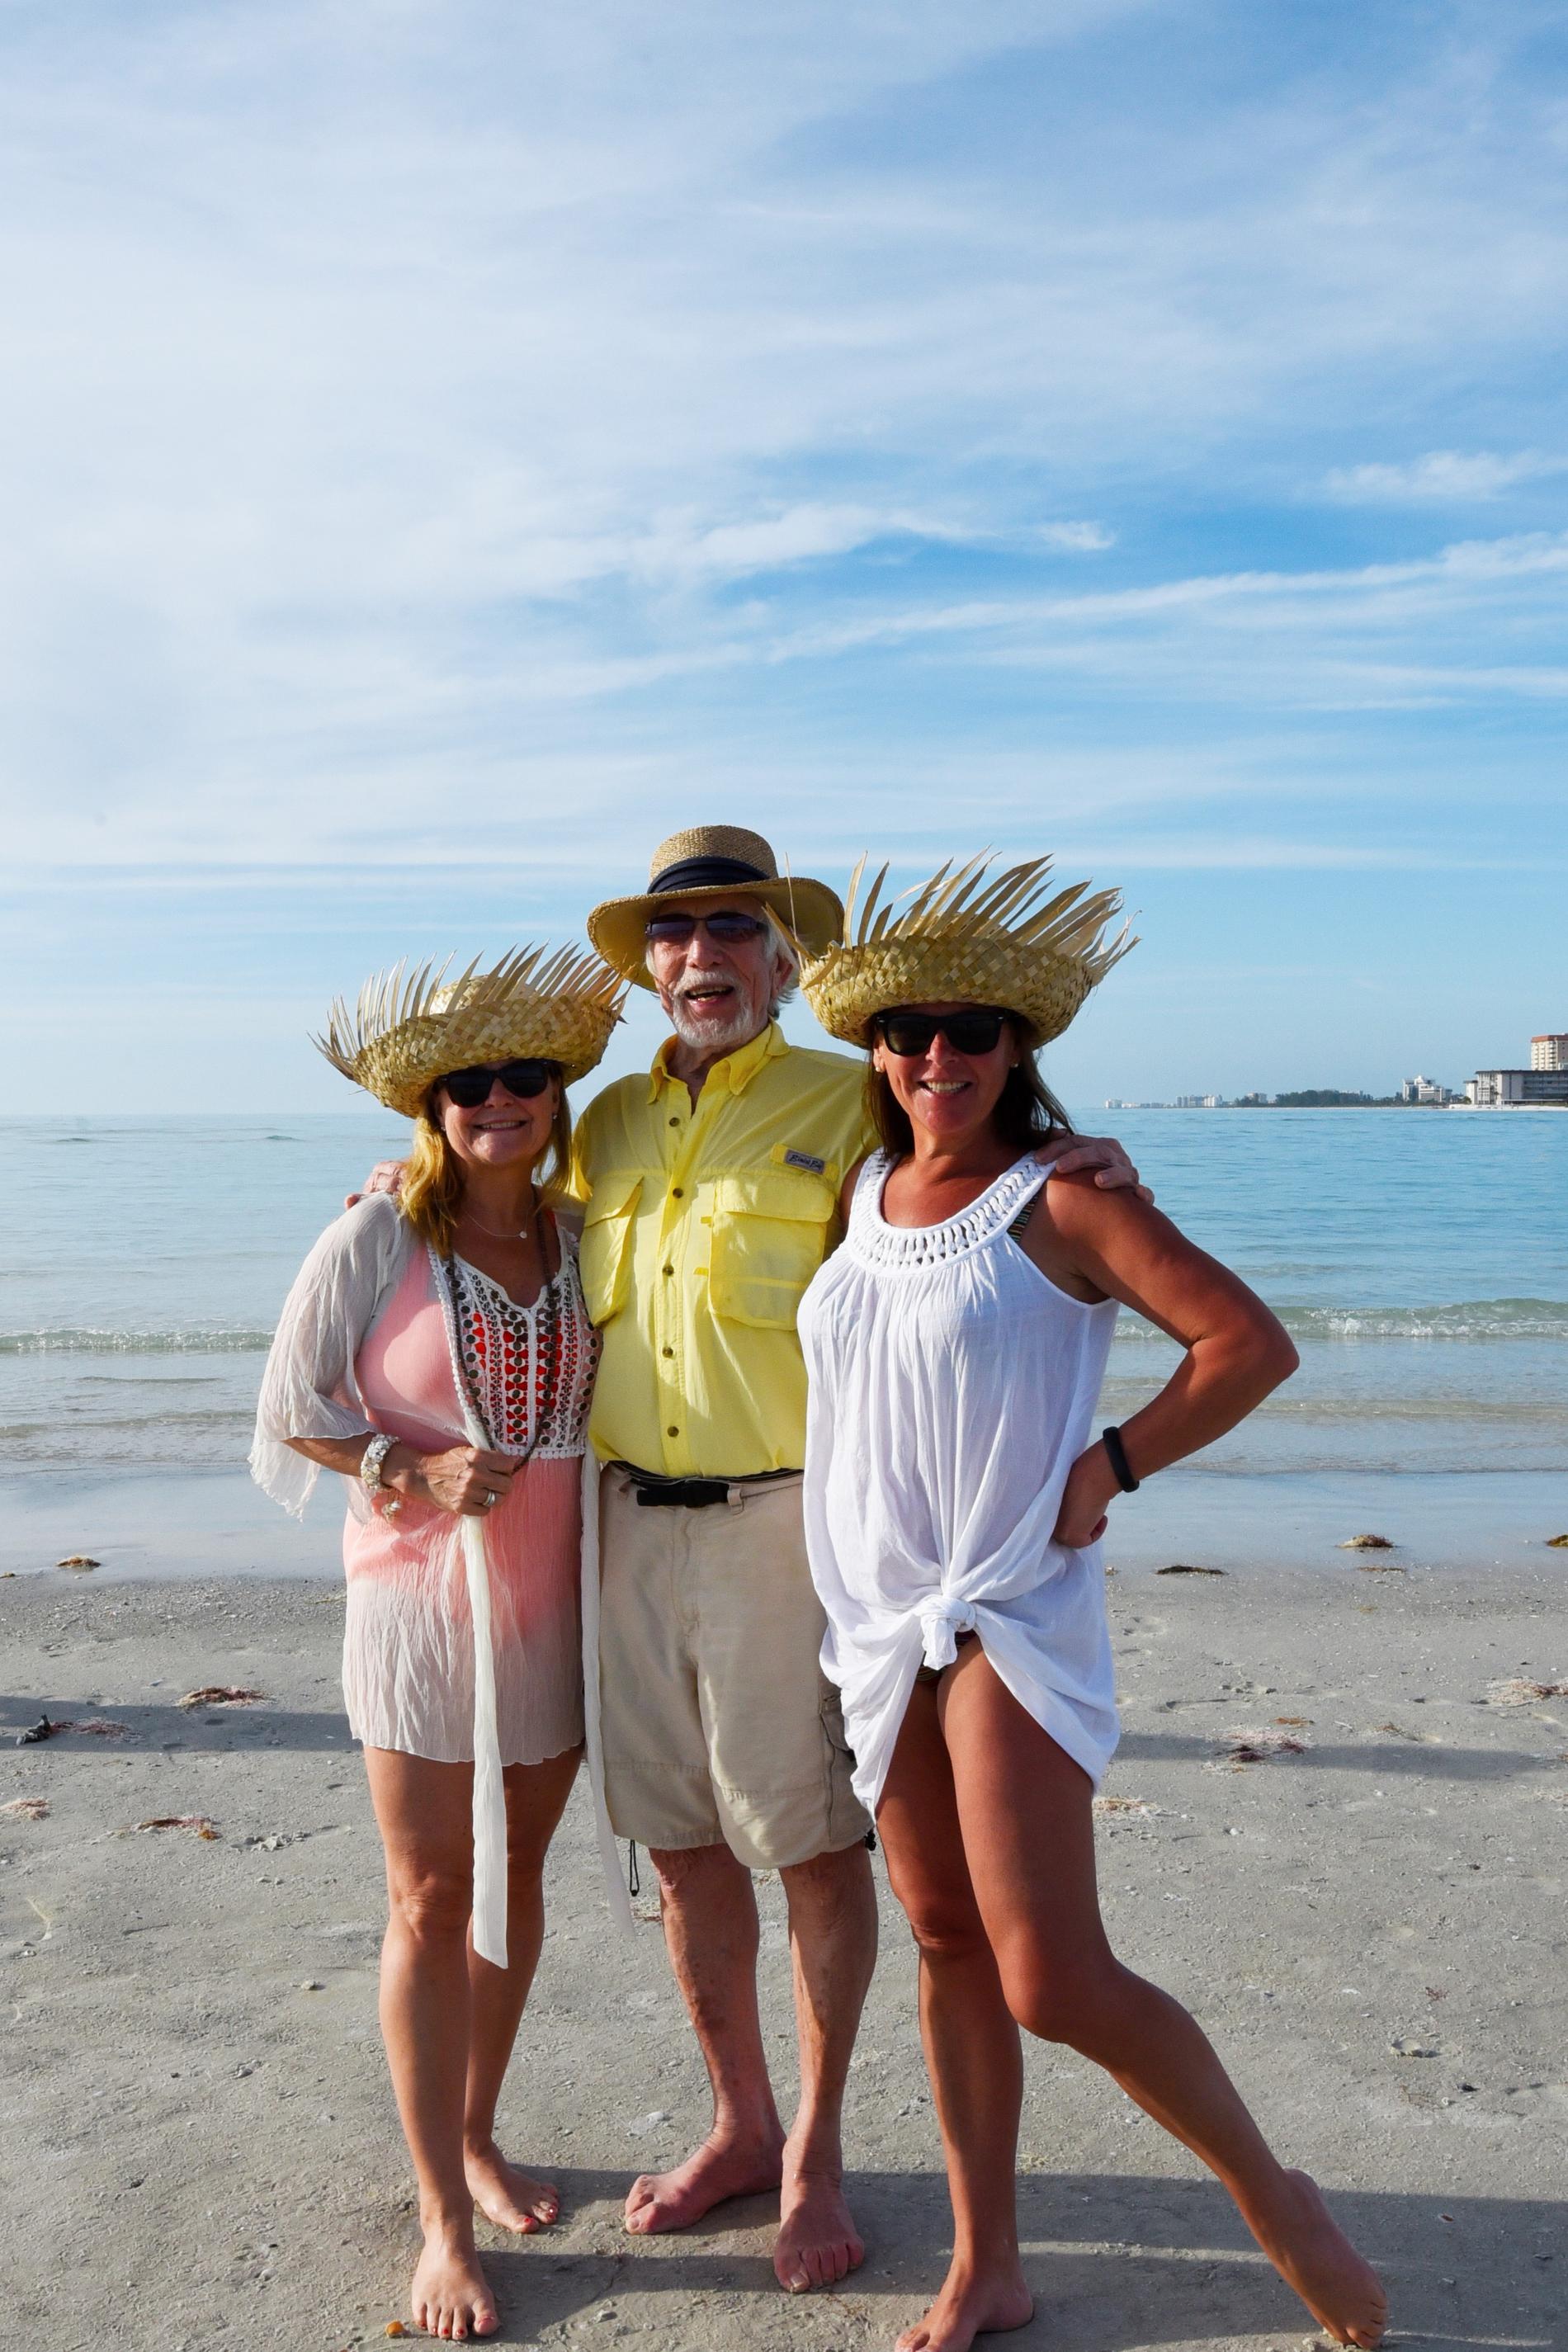 Owe Thörnqvist laddar upp i Florida – och träffade schlagerveteranerna Elisabeth Andreassen och Lotta Engberg på stranden.